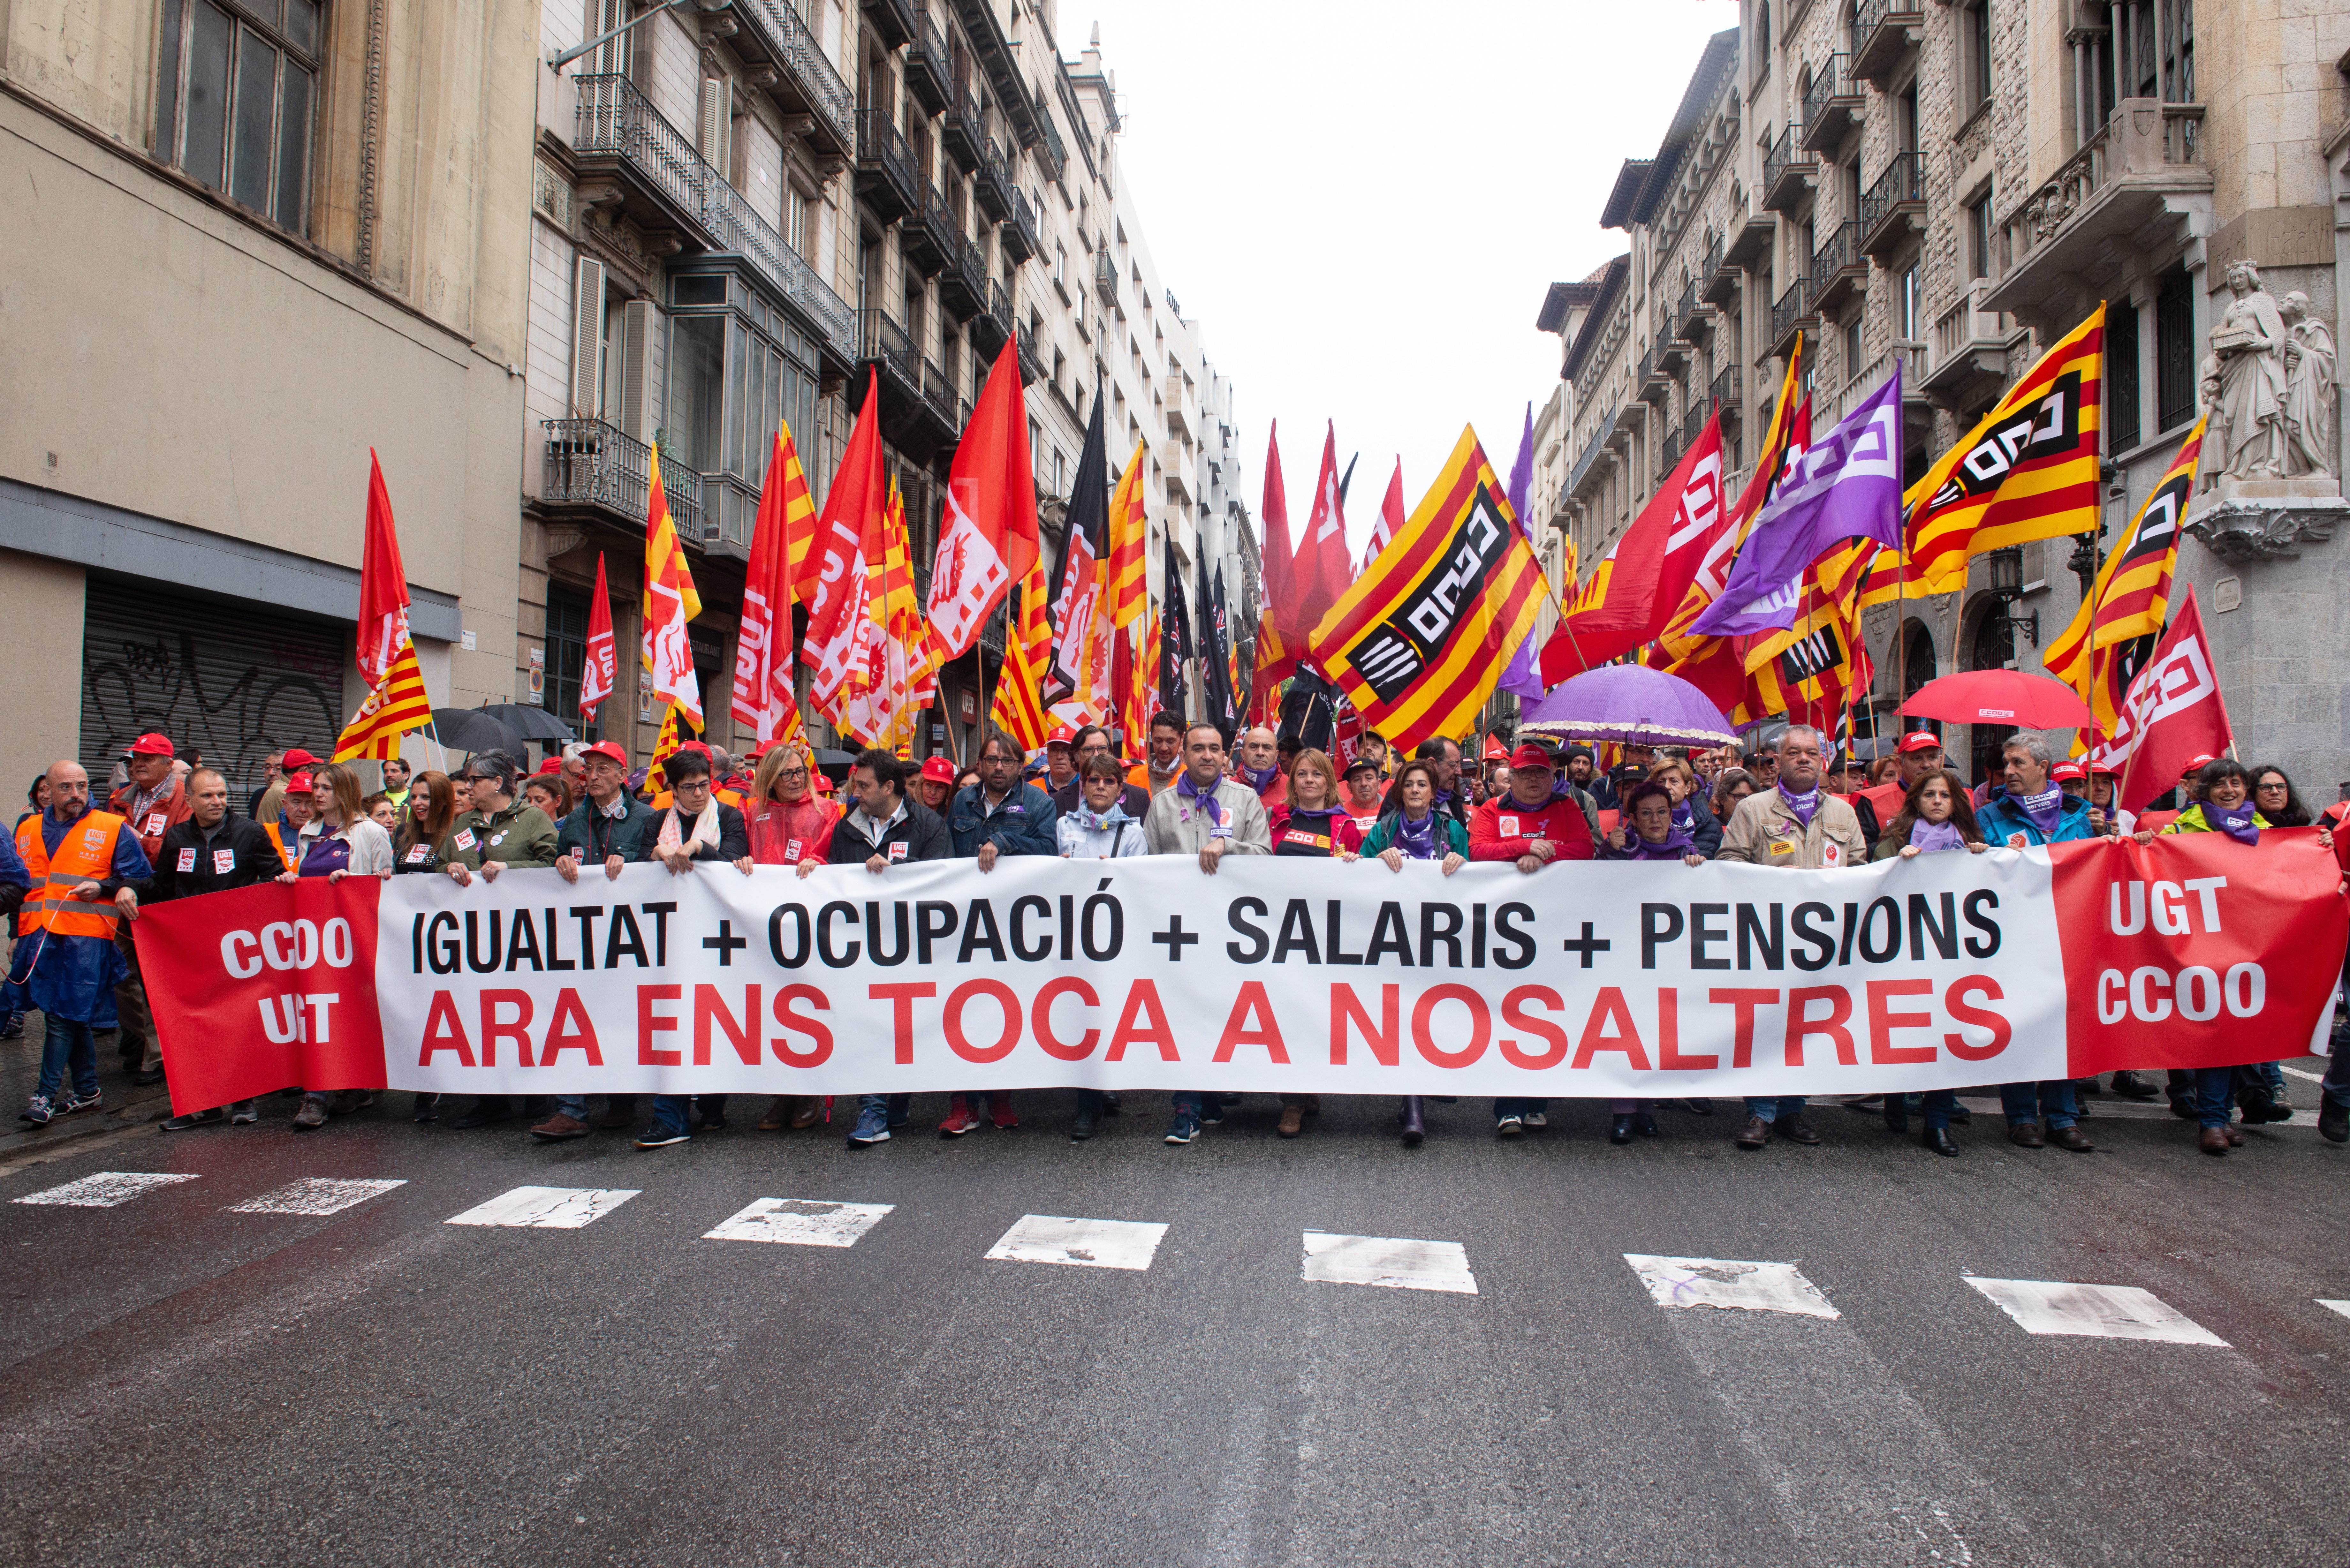 Els sindicats criden a "omplir els carrers" reivindicant "més drets i democràcia"